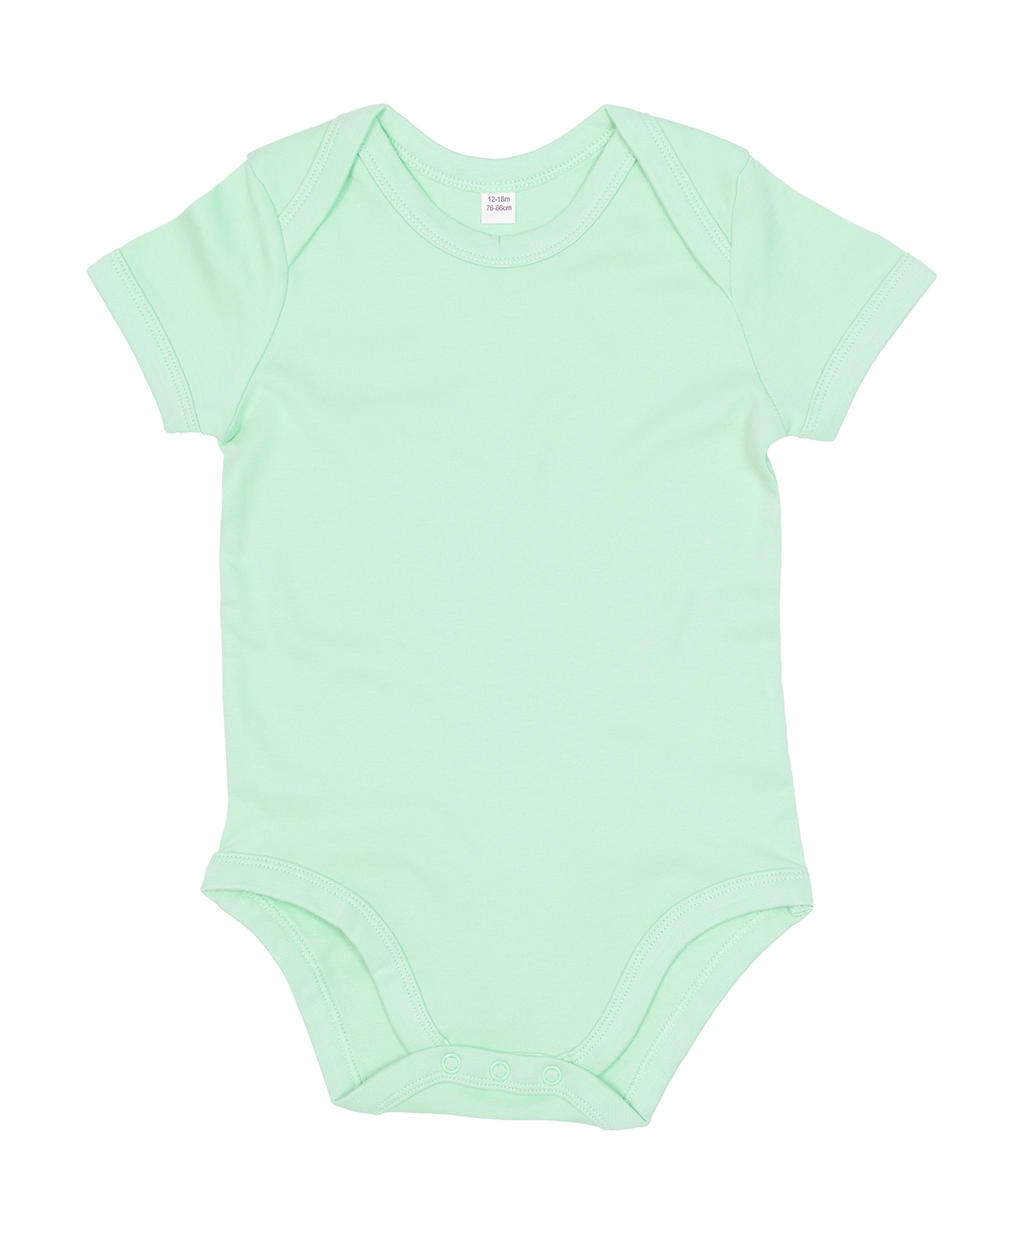 Baby Bodysuit zum Besticken und Bedrucken in der Farbe Mint Organic mit Ihren Logo, Schriftzug oder Motiv.